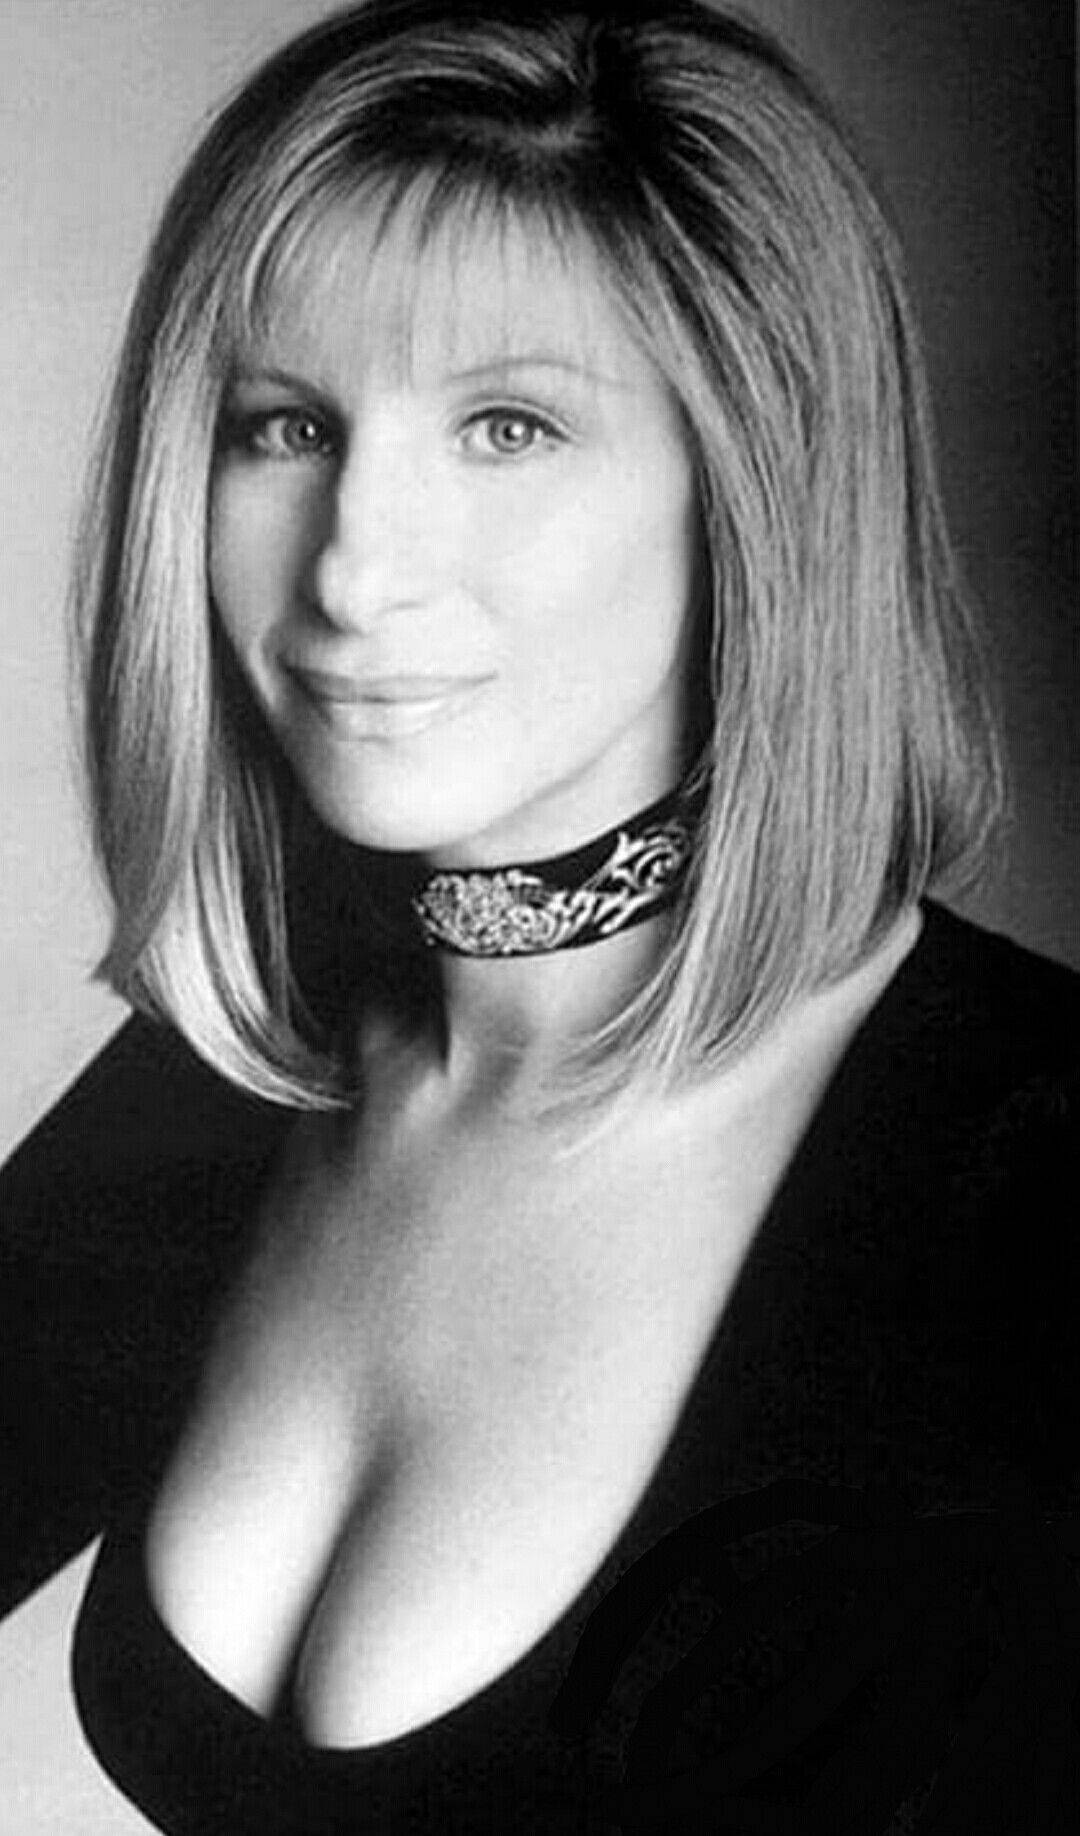 Cantanteestadounidense Barbra Streisand El Concierto Gira 1994 Fondo de pantalla